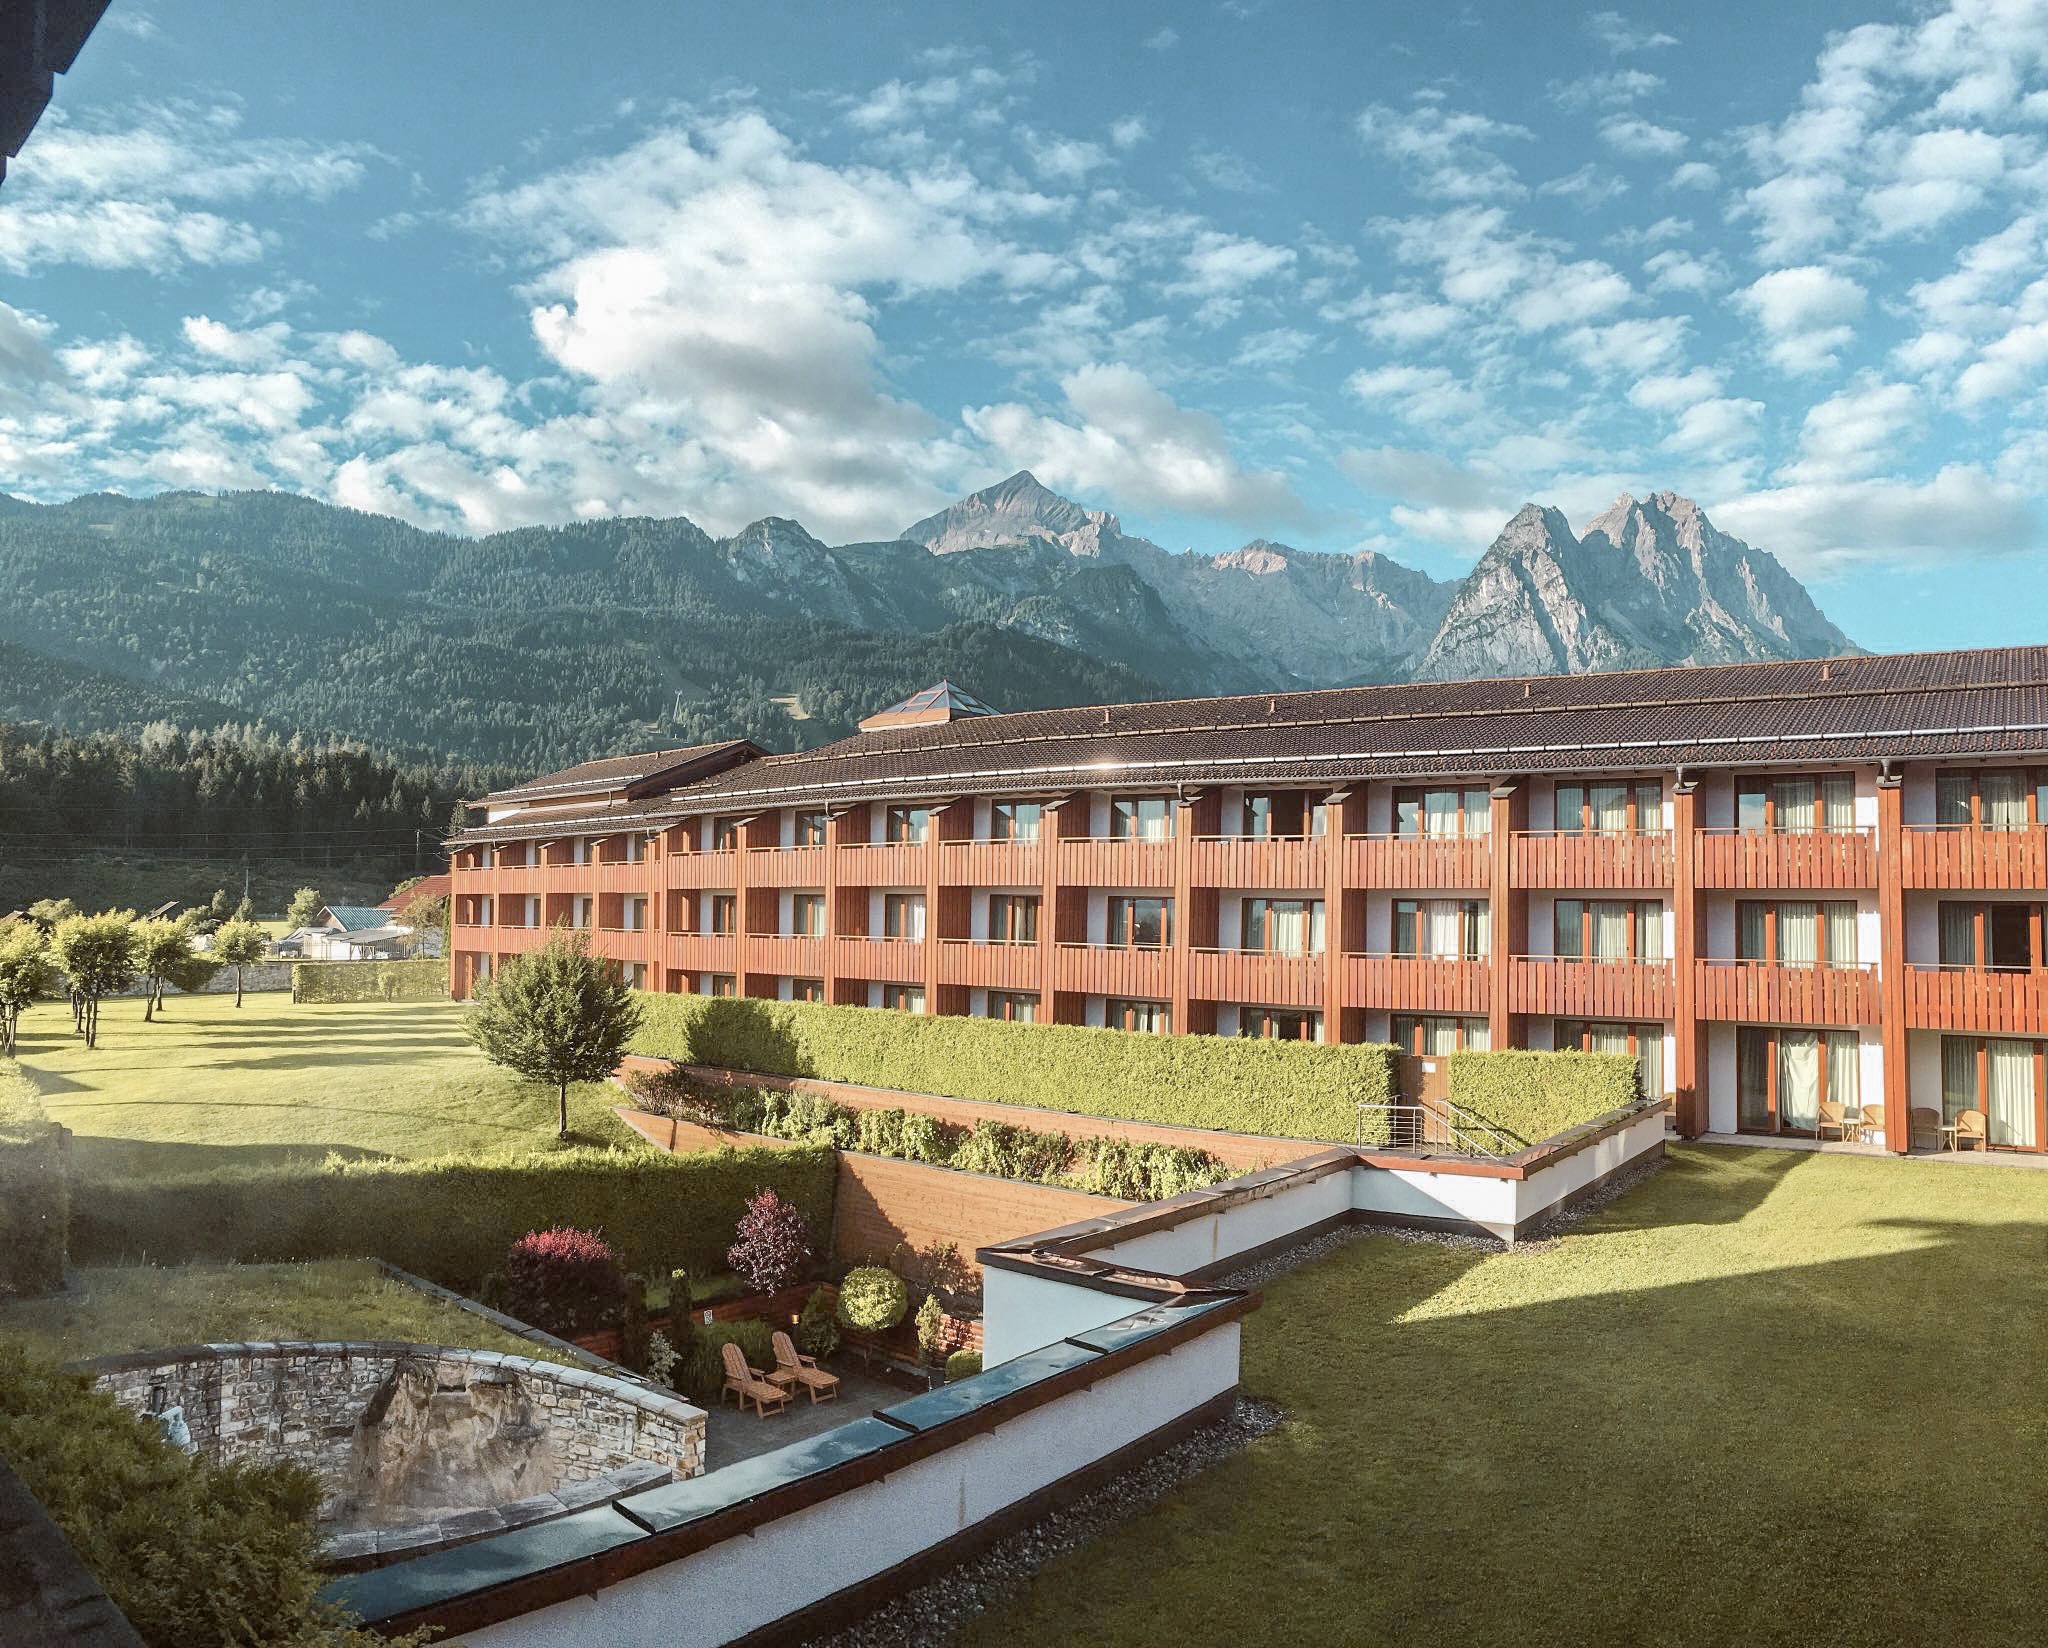 Edelweiss Lodge and Resort in Garmisch-Partenkirchen.